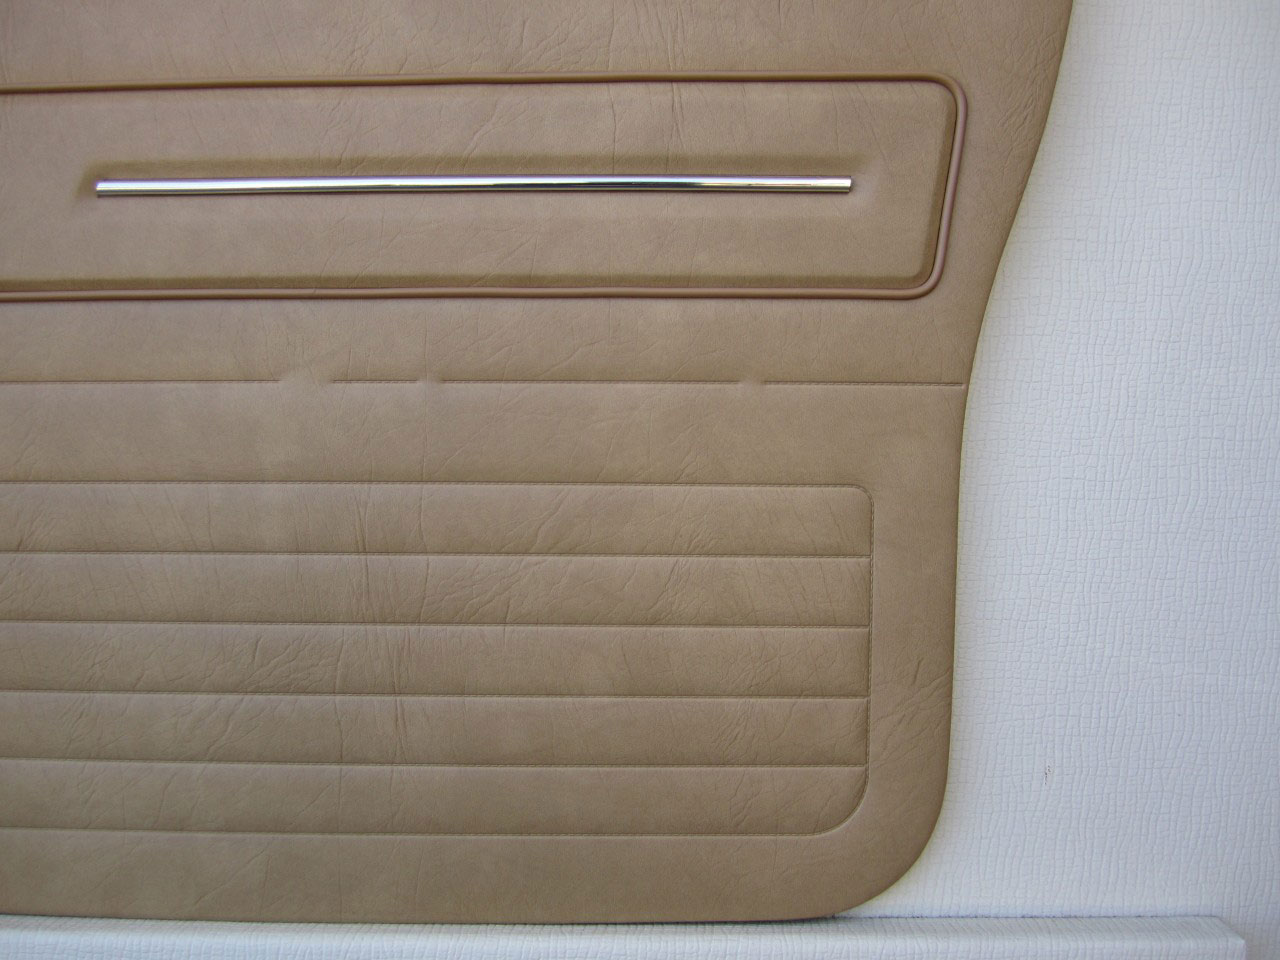 Holden Sandman HZ Sandman Panel Van 63V Buckskin Door Trims (Image 9 of 18)